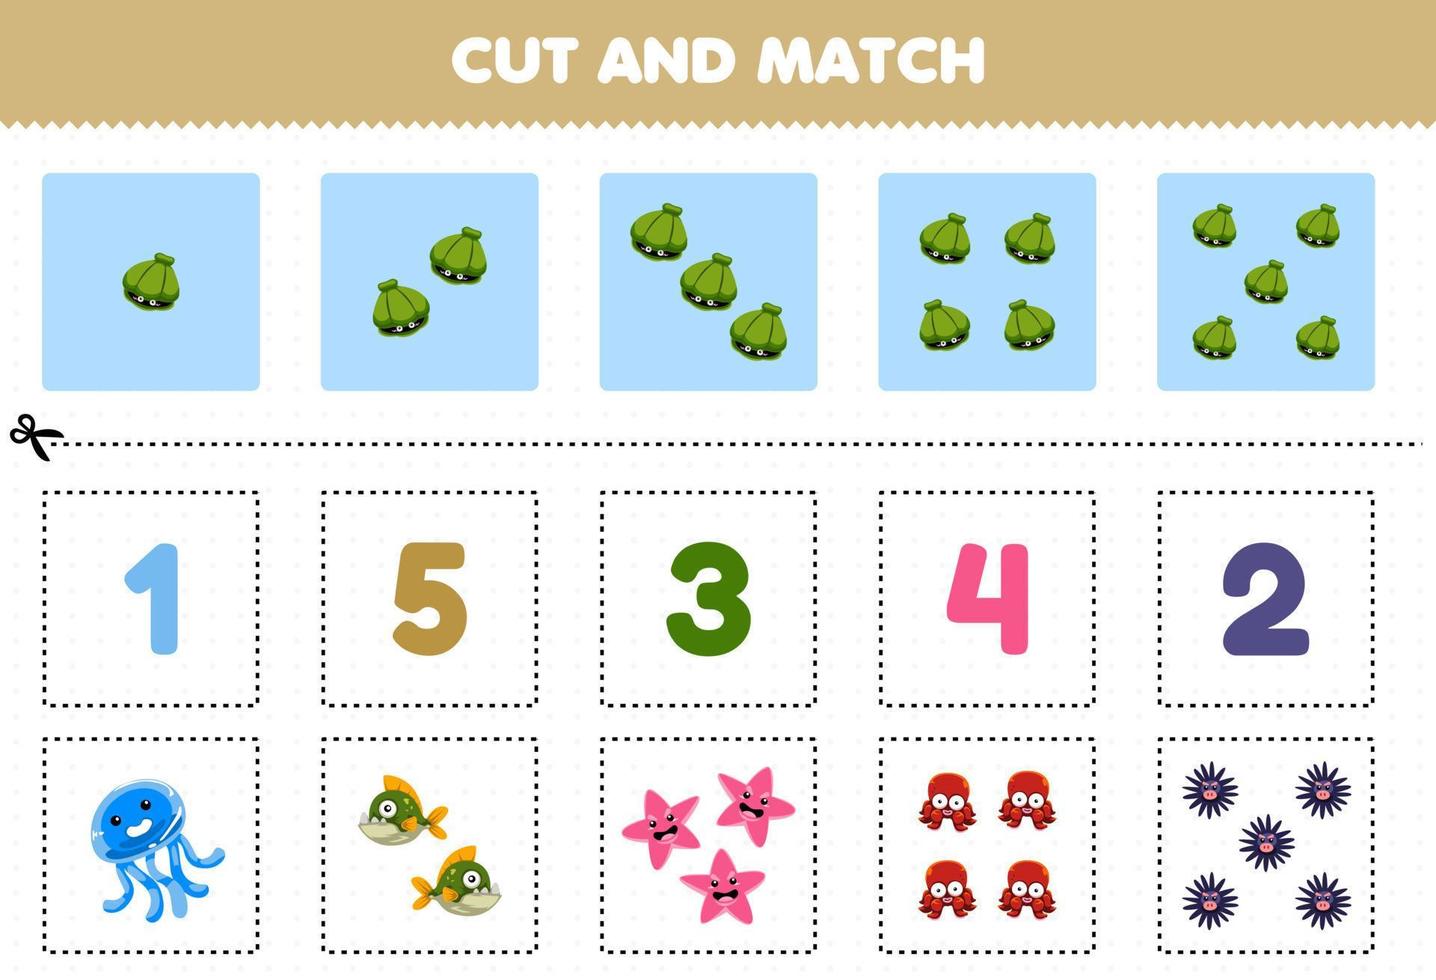 utbildningsspel för barn klipp och matcha samma antal söta tecknade undervattensdjur utskrivbara kalkylblad vektor